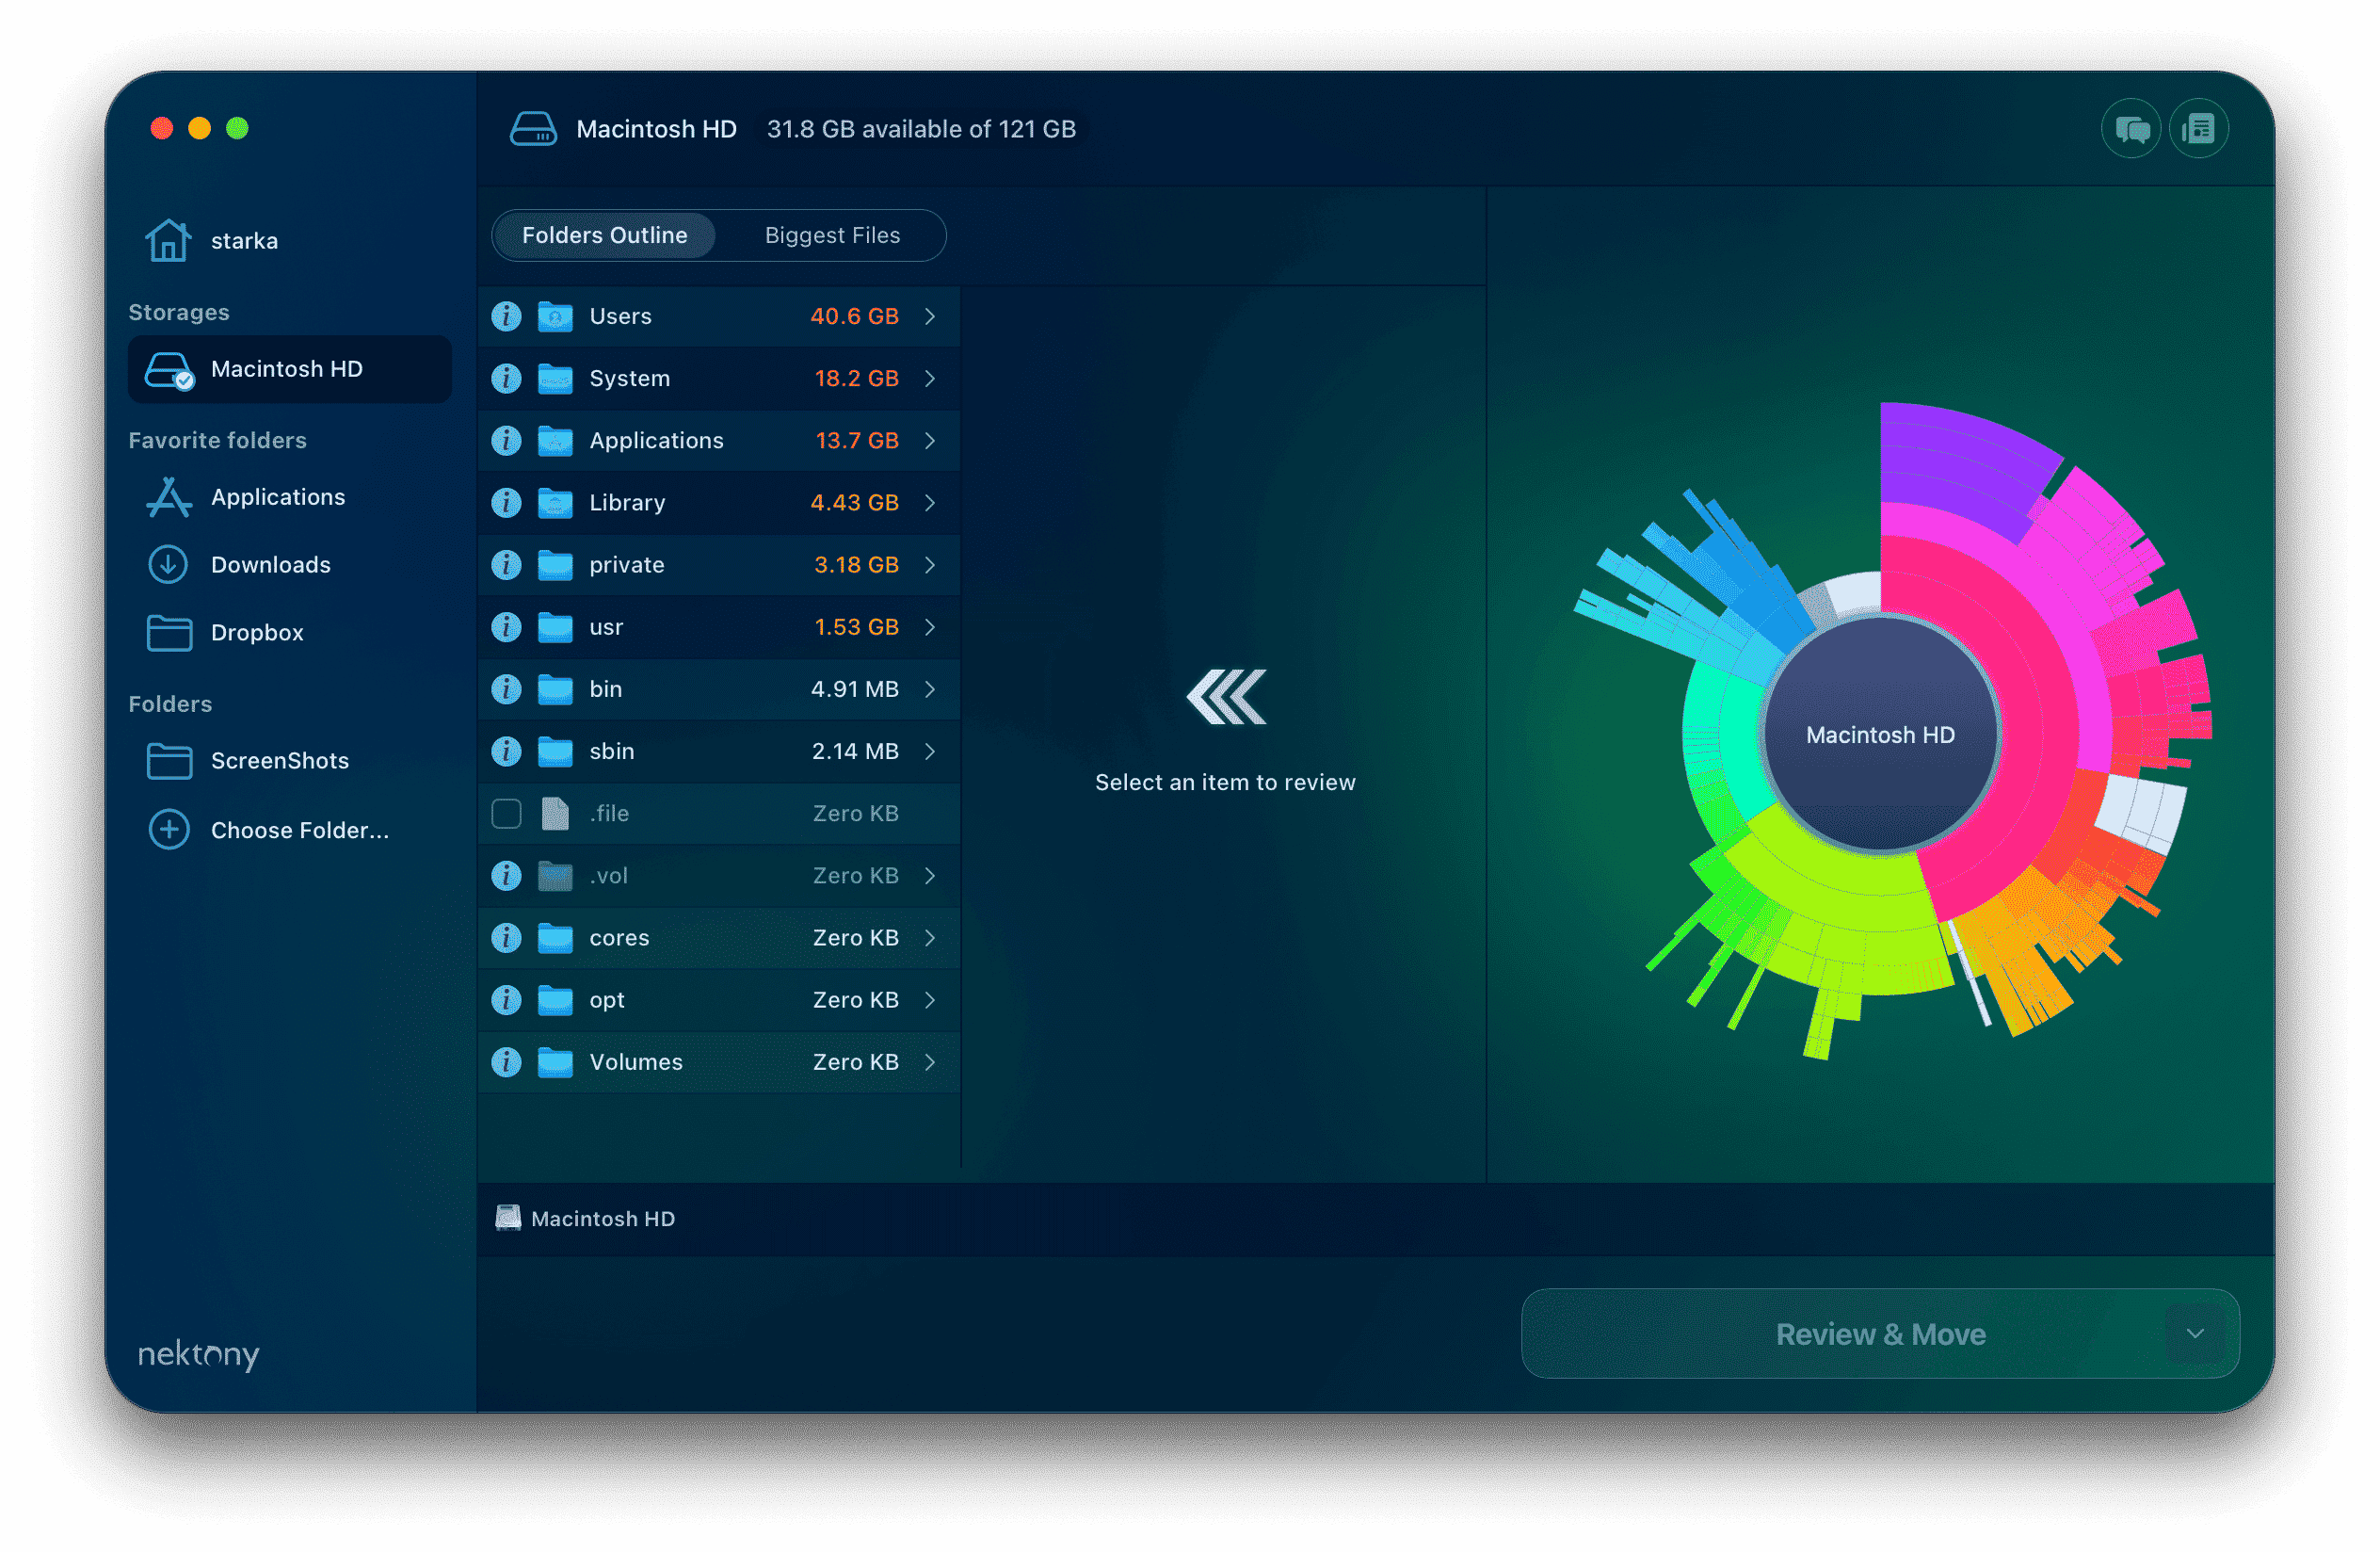 Disk Space Analyzer - analyze full disk on Mac